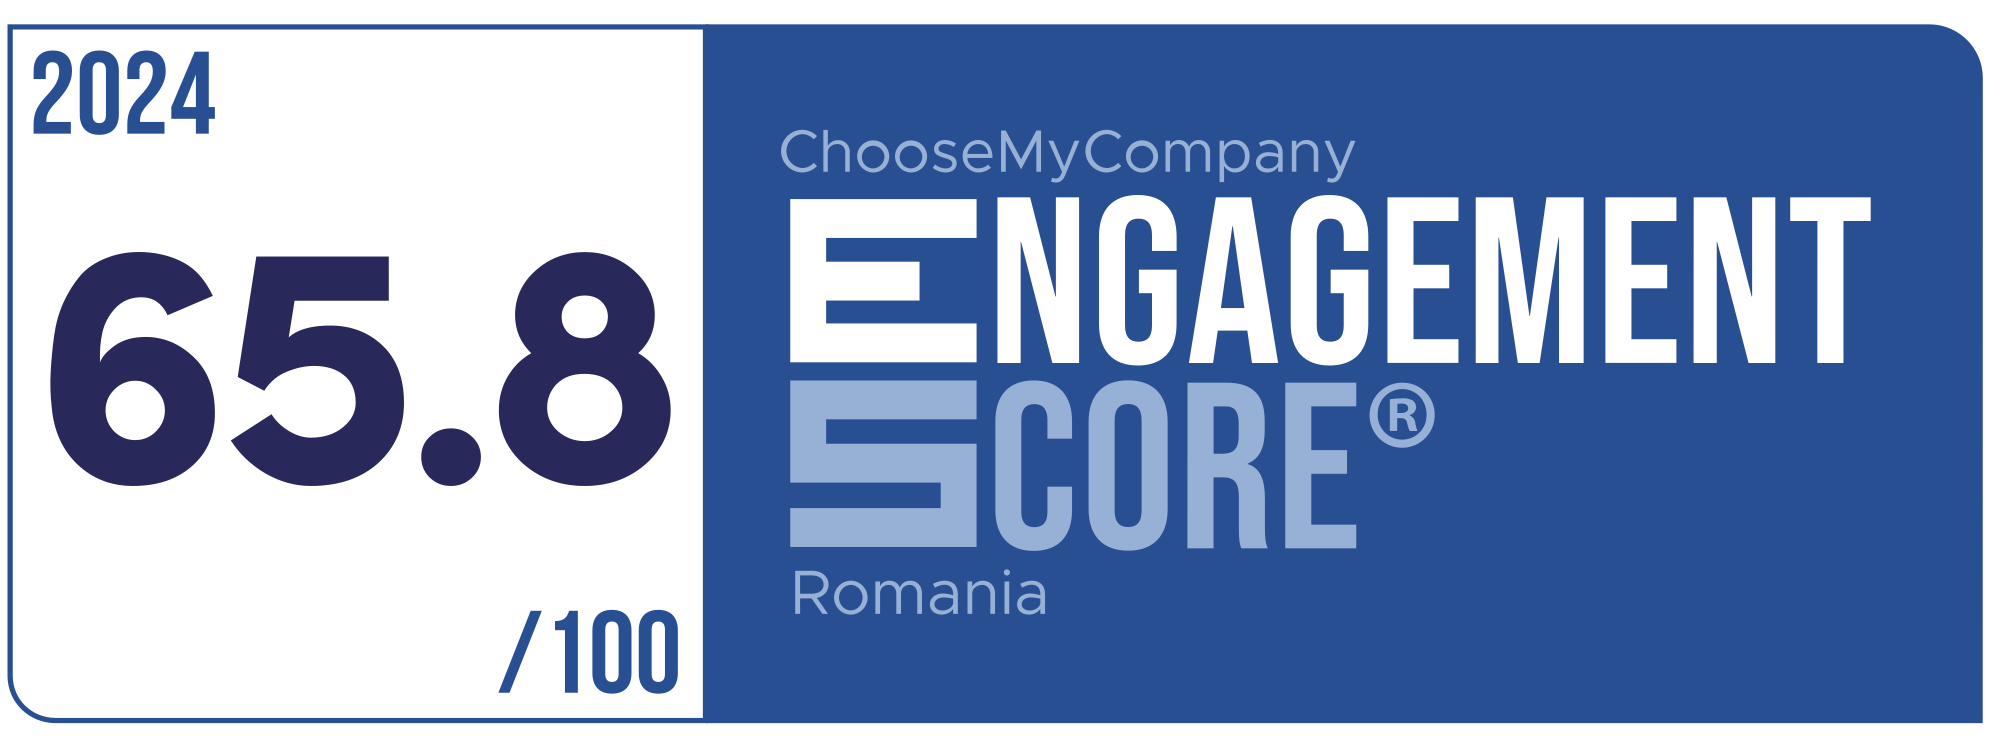 Label Engagement Score 2024 Romania